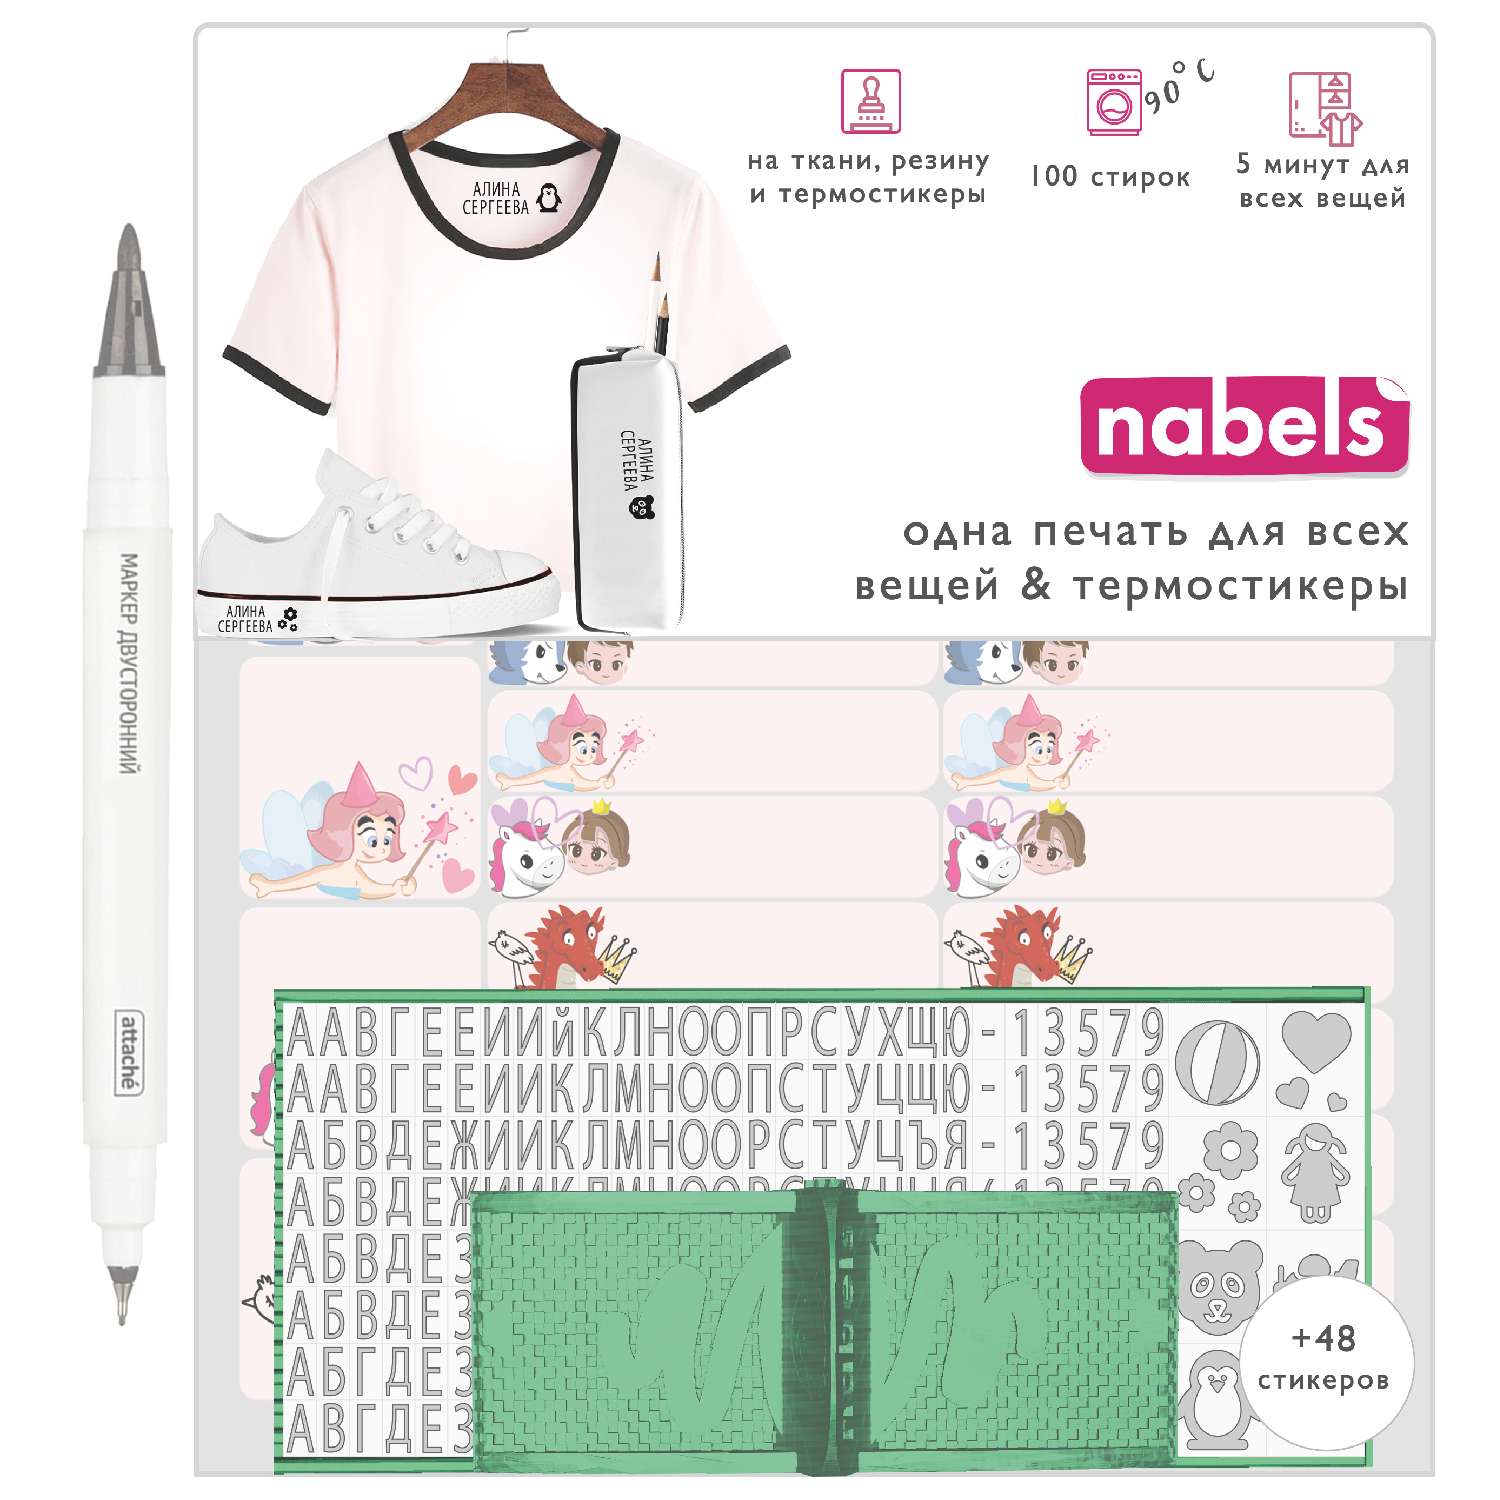 Набор Nabels для самонаборной печати с термостикерами Принцесса - фото 1